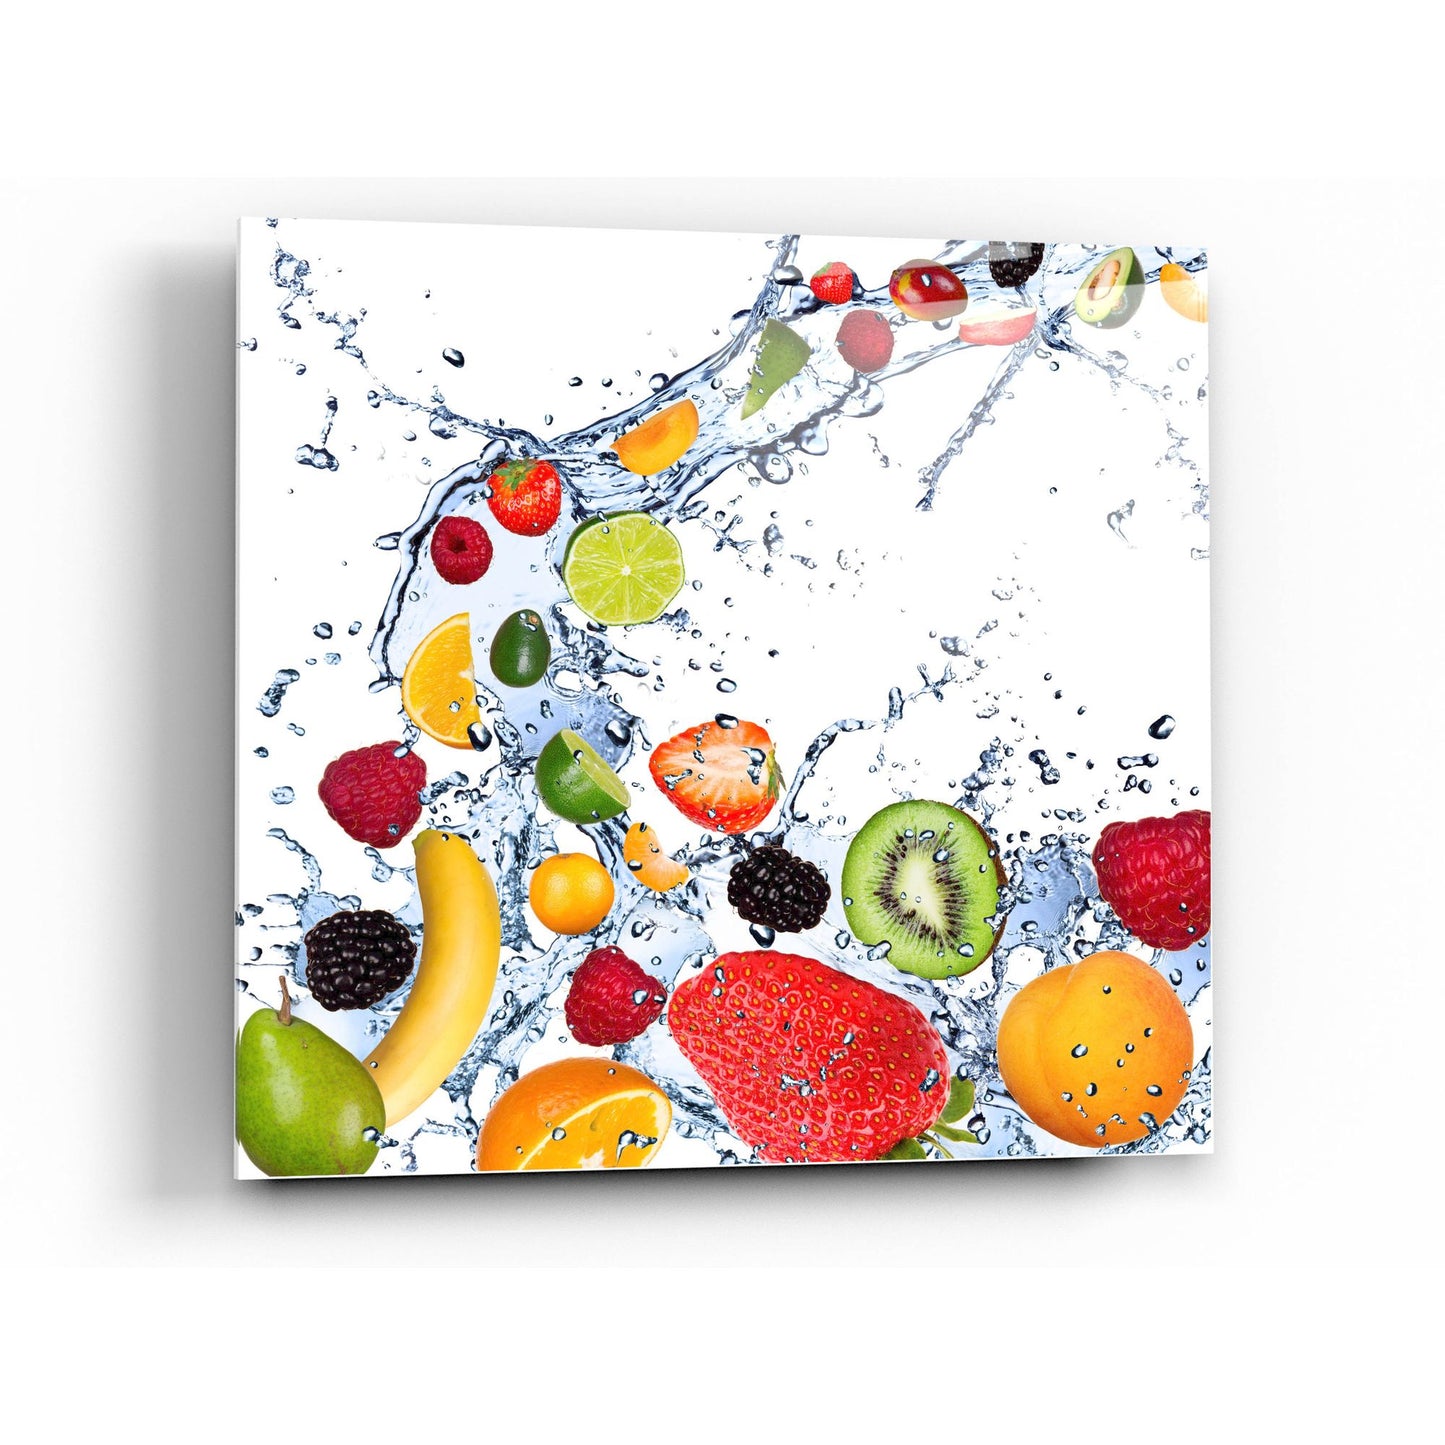 Epic Art "Fruit Splash II" Acrylic Glass Wall Art,24x24